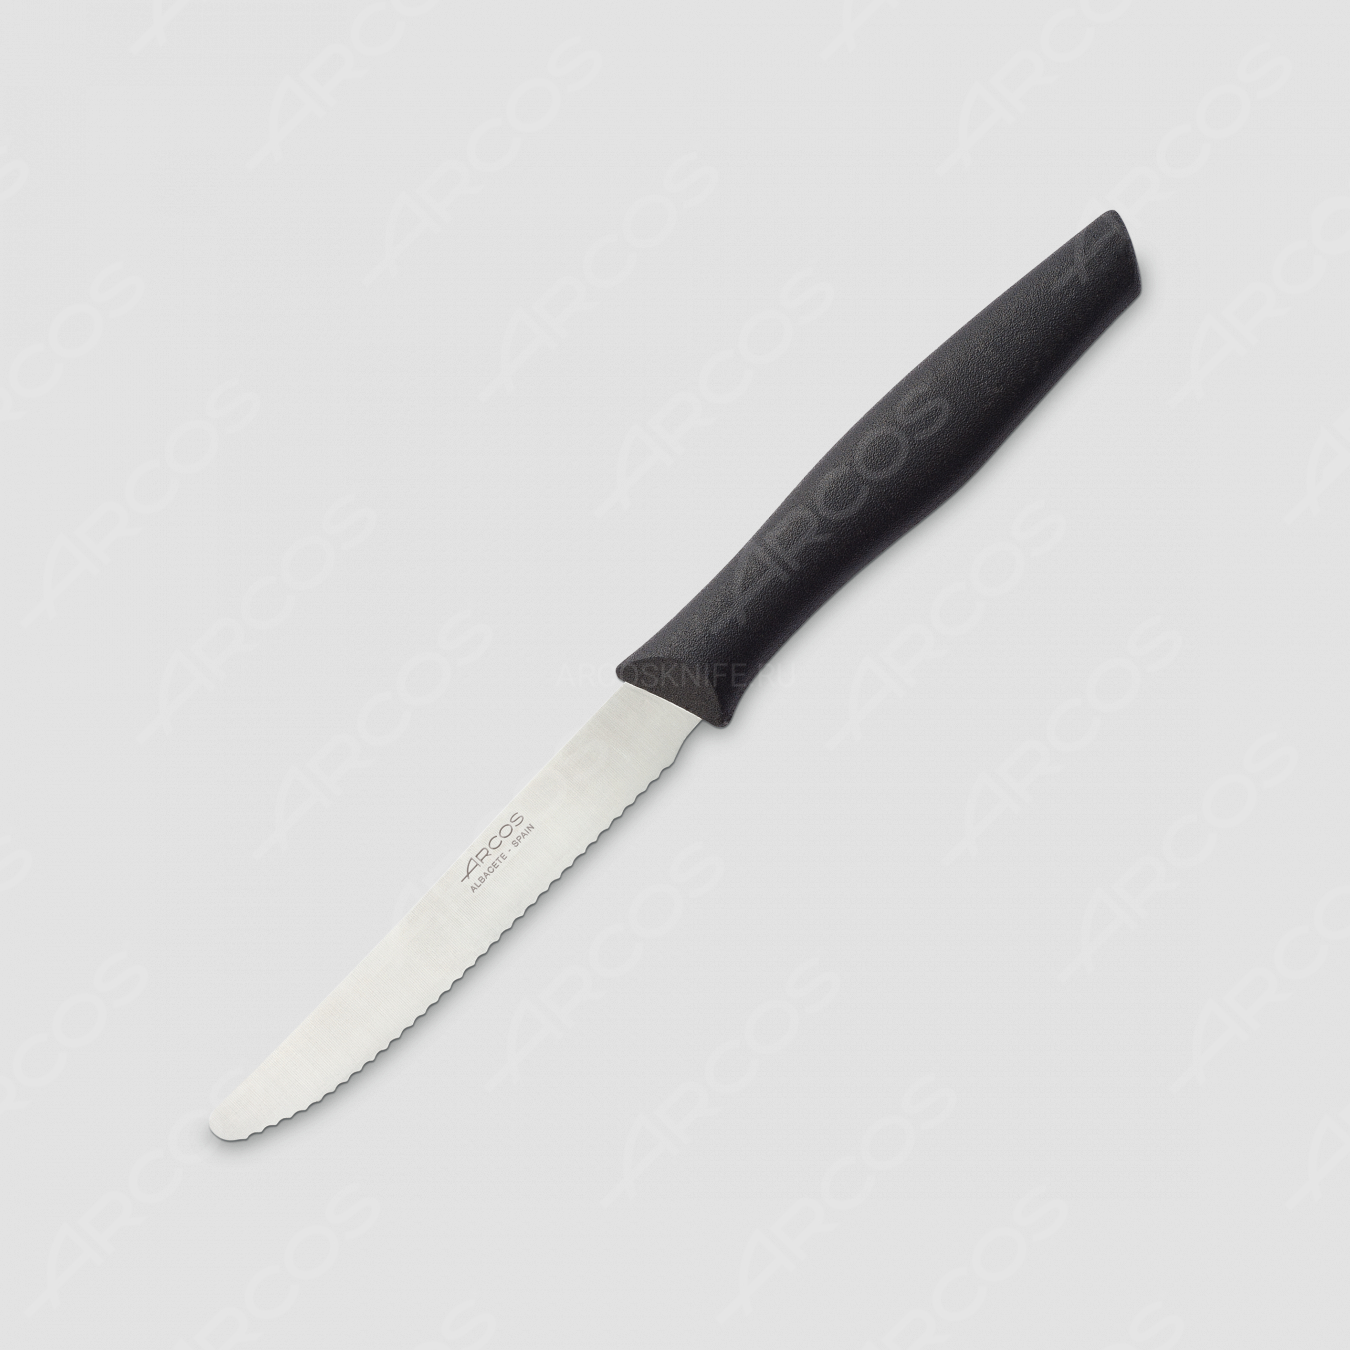 Нож кухонный бутербродный 11 см, рукоять черная, серия Nova, ARCOS, Испания